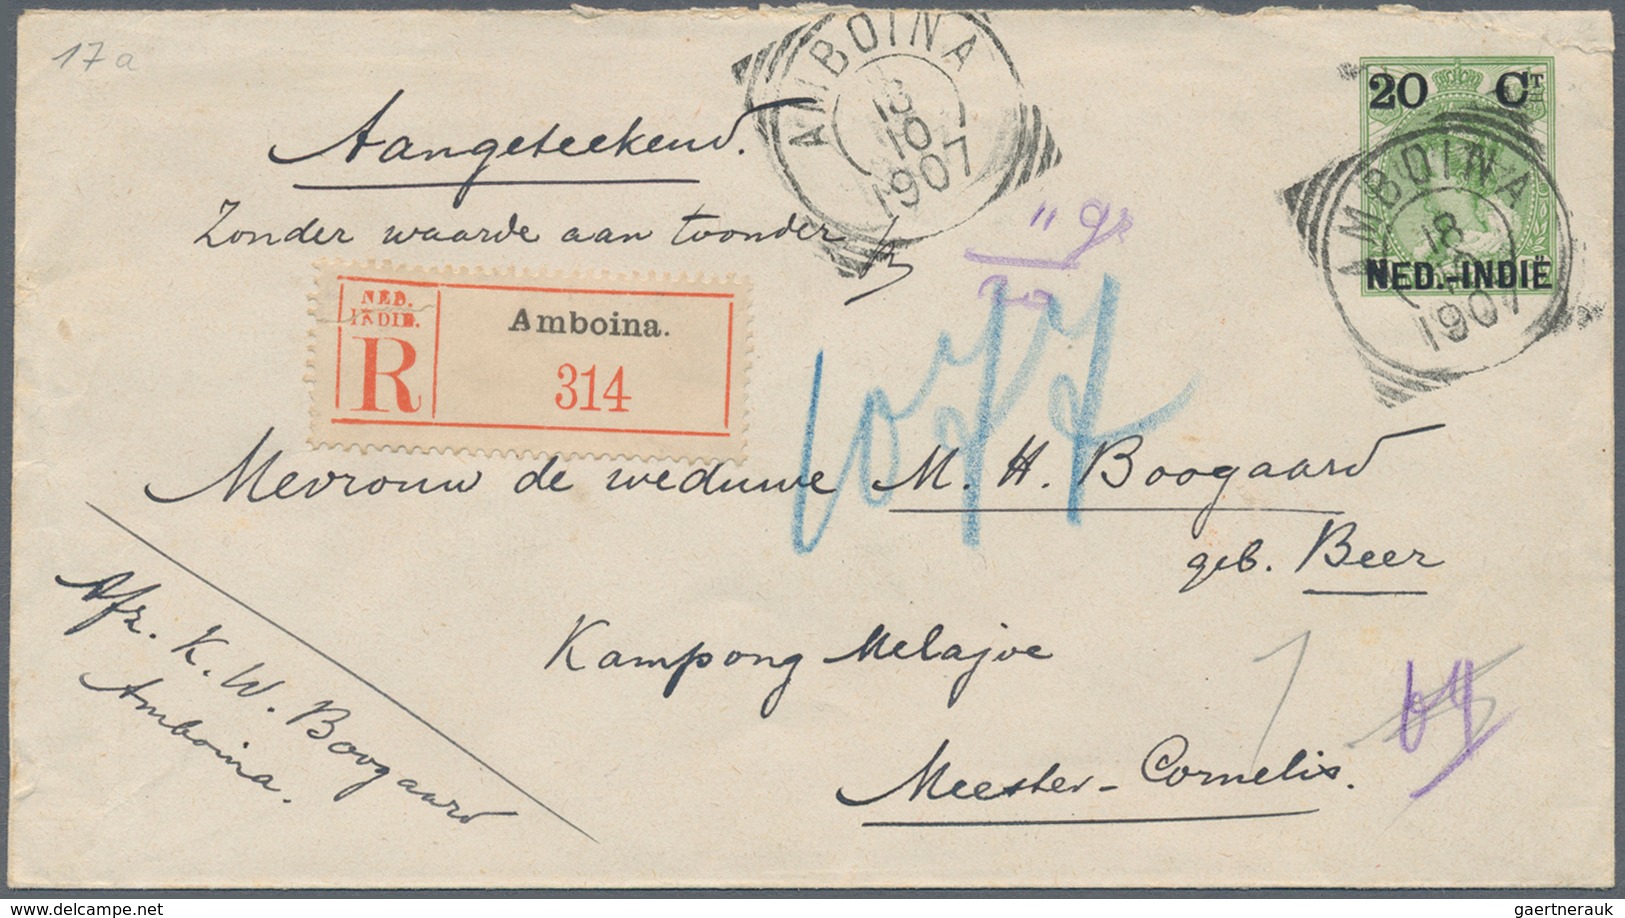 Niederländisch-Indien: 1906, Stationery Envelope 20 C. Canc. "AMBOINA 18 10 1907" Registered Inland - Niederländisch-Indien